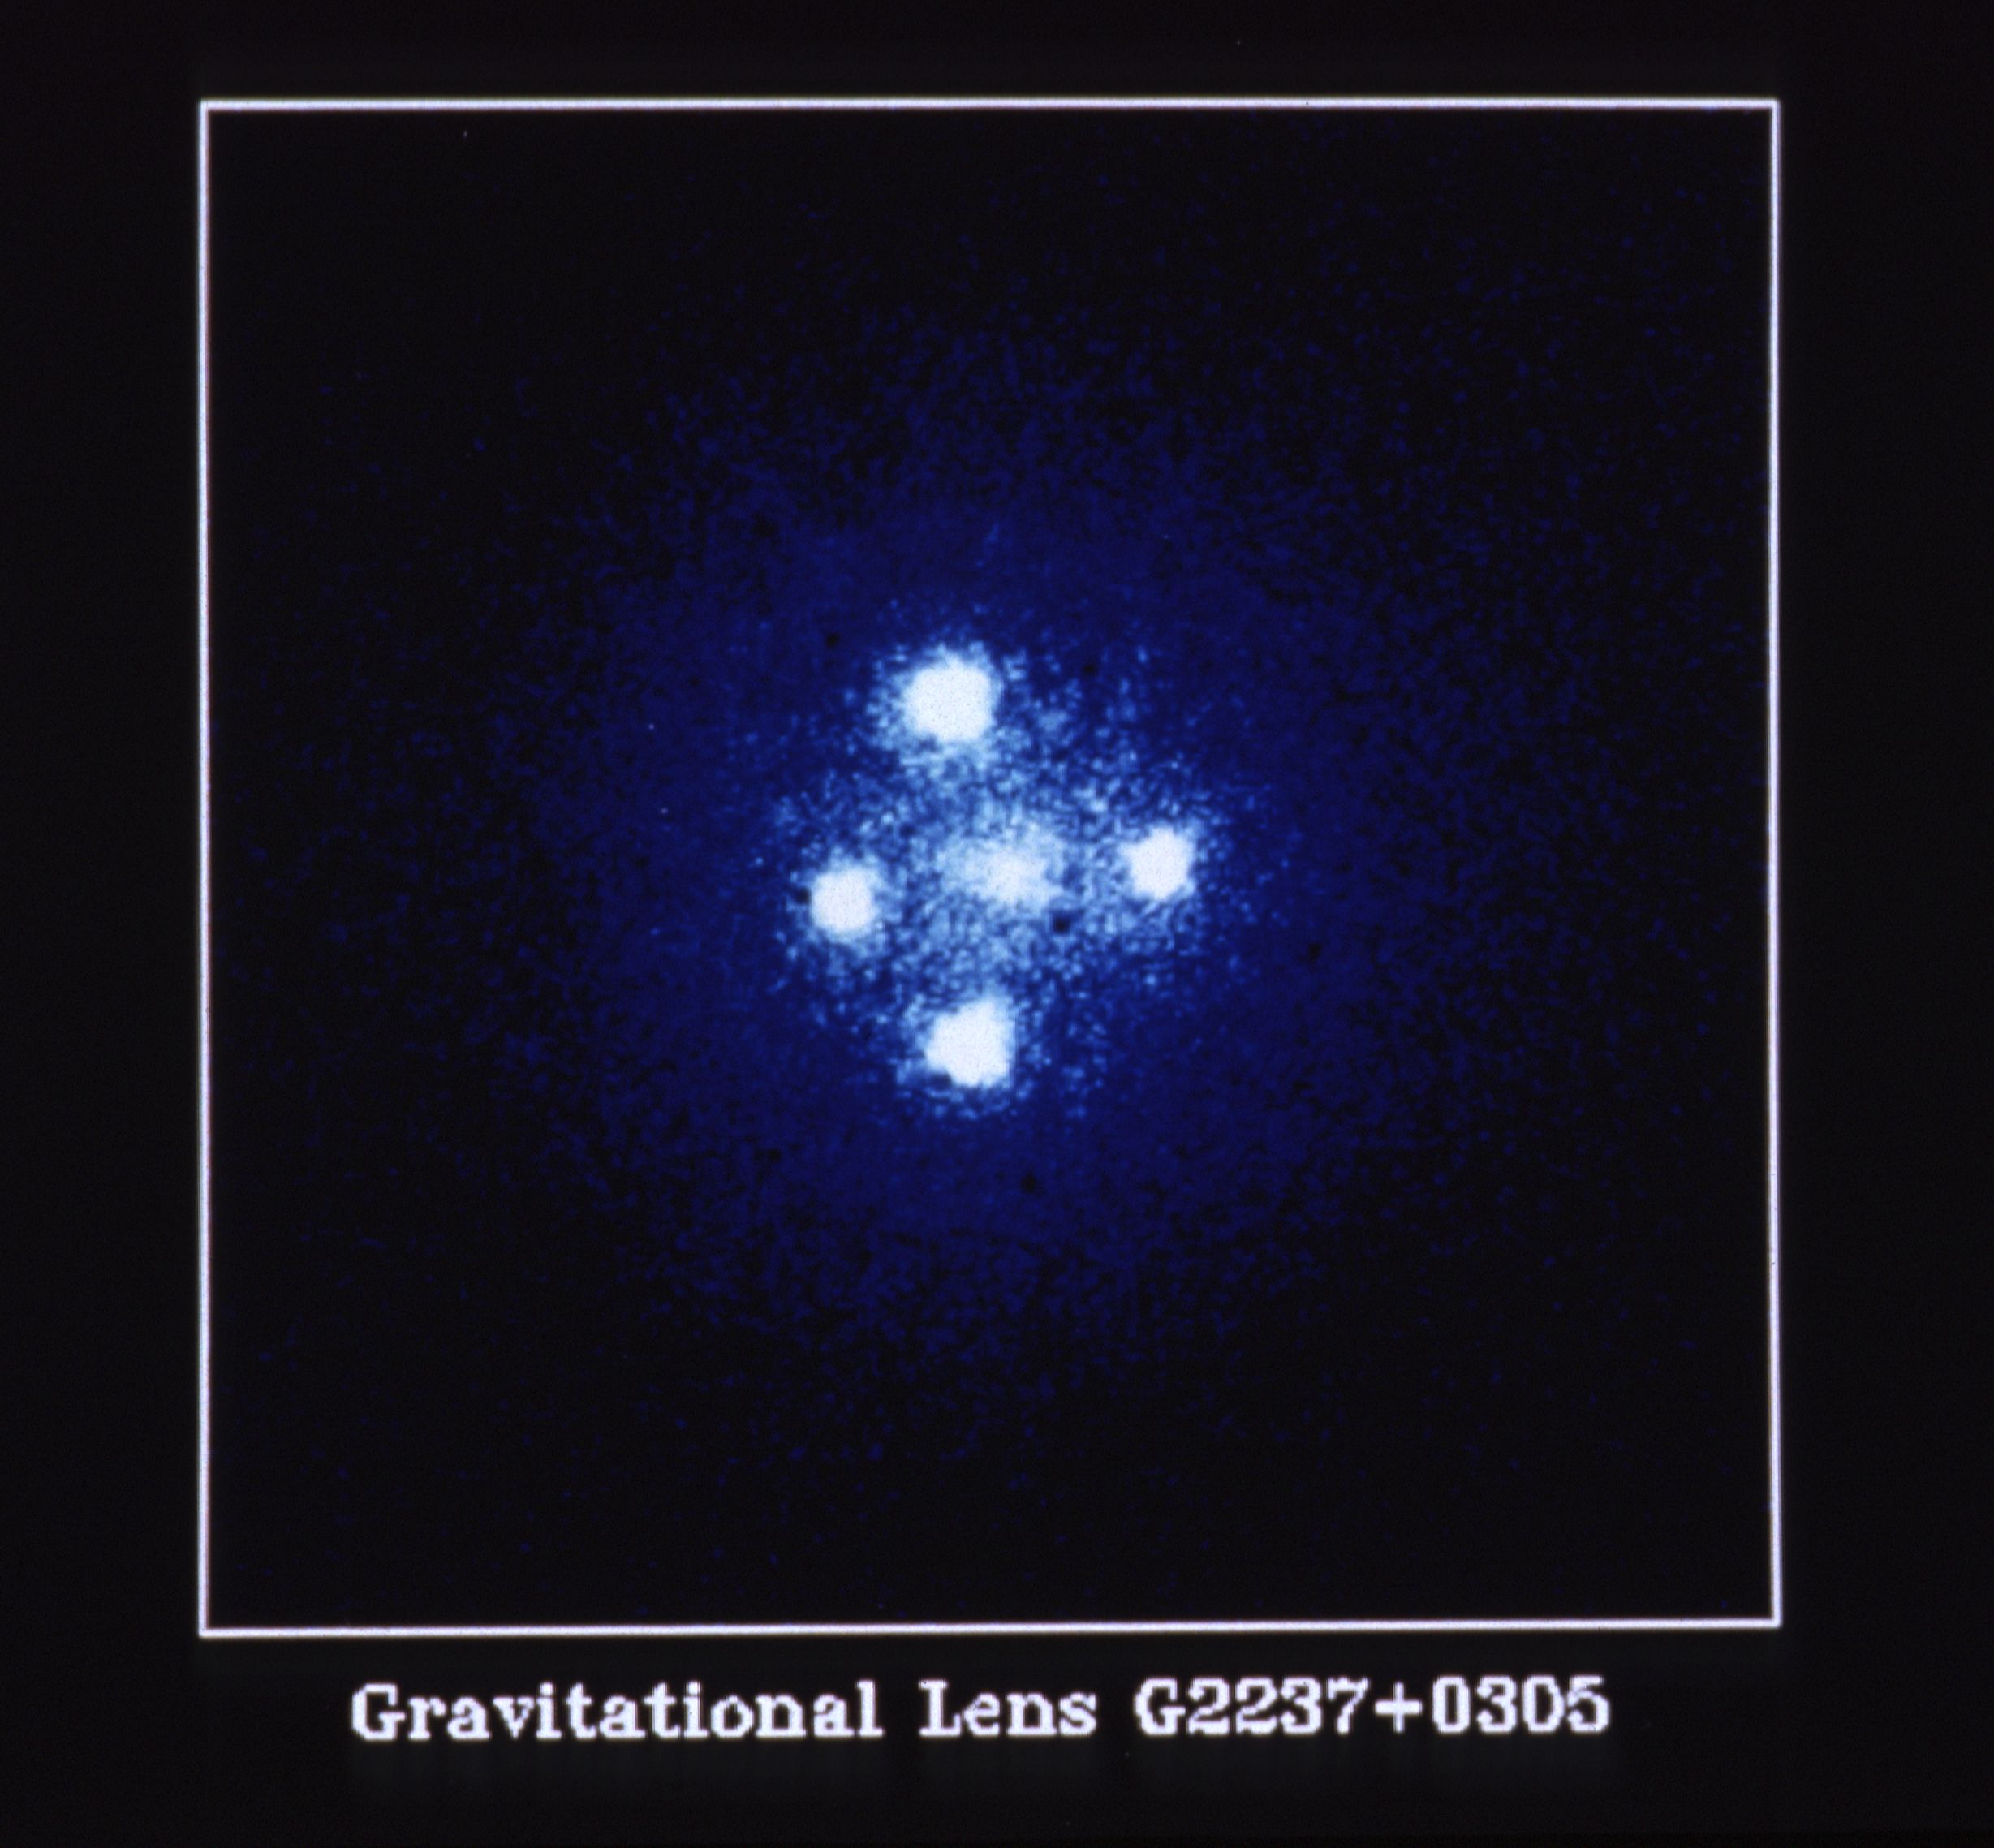 HST image of the Einstein Cross quasar Q2237+0305